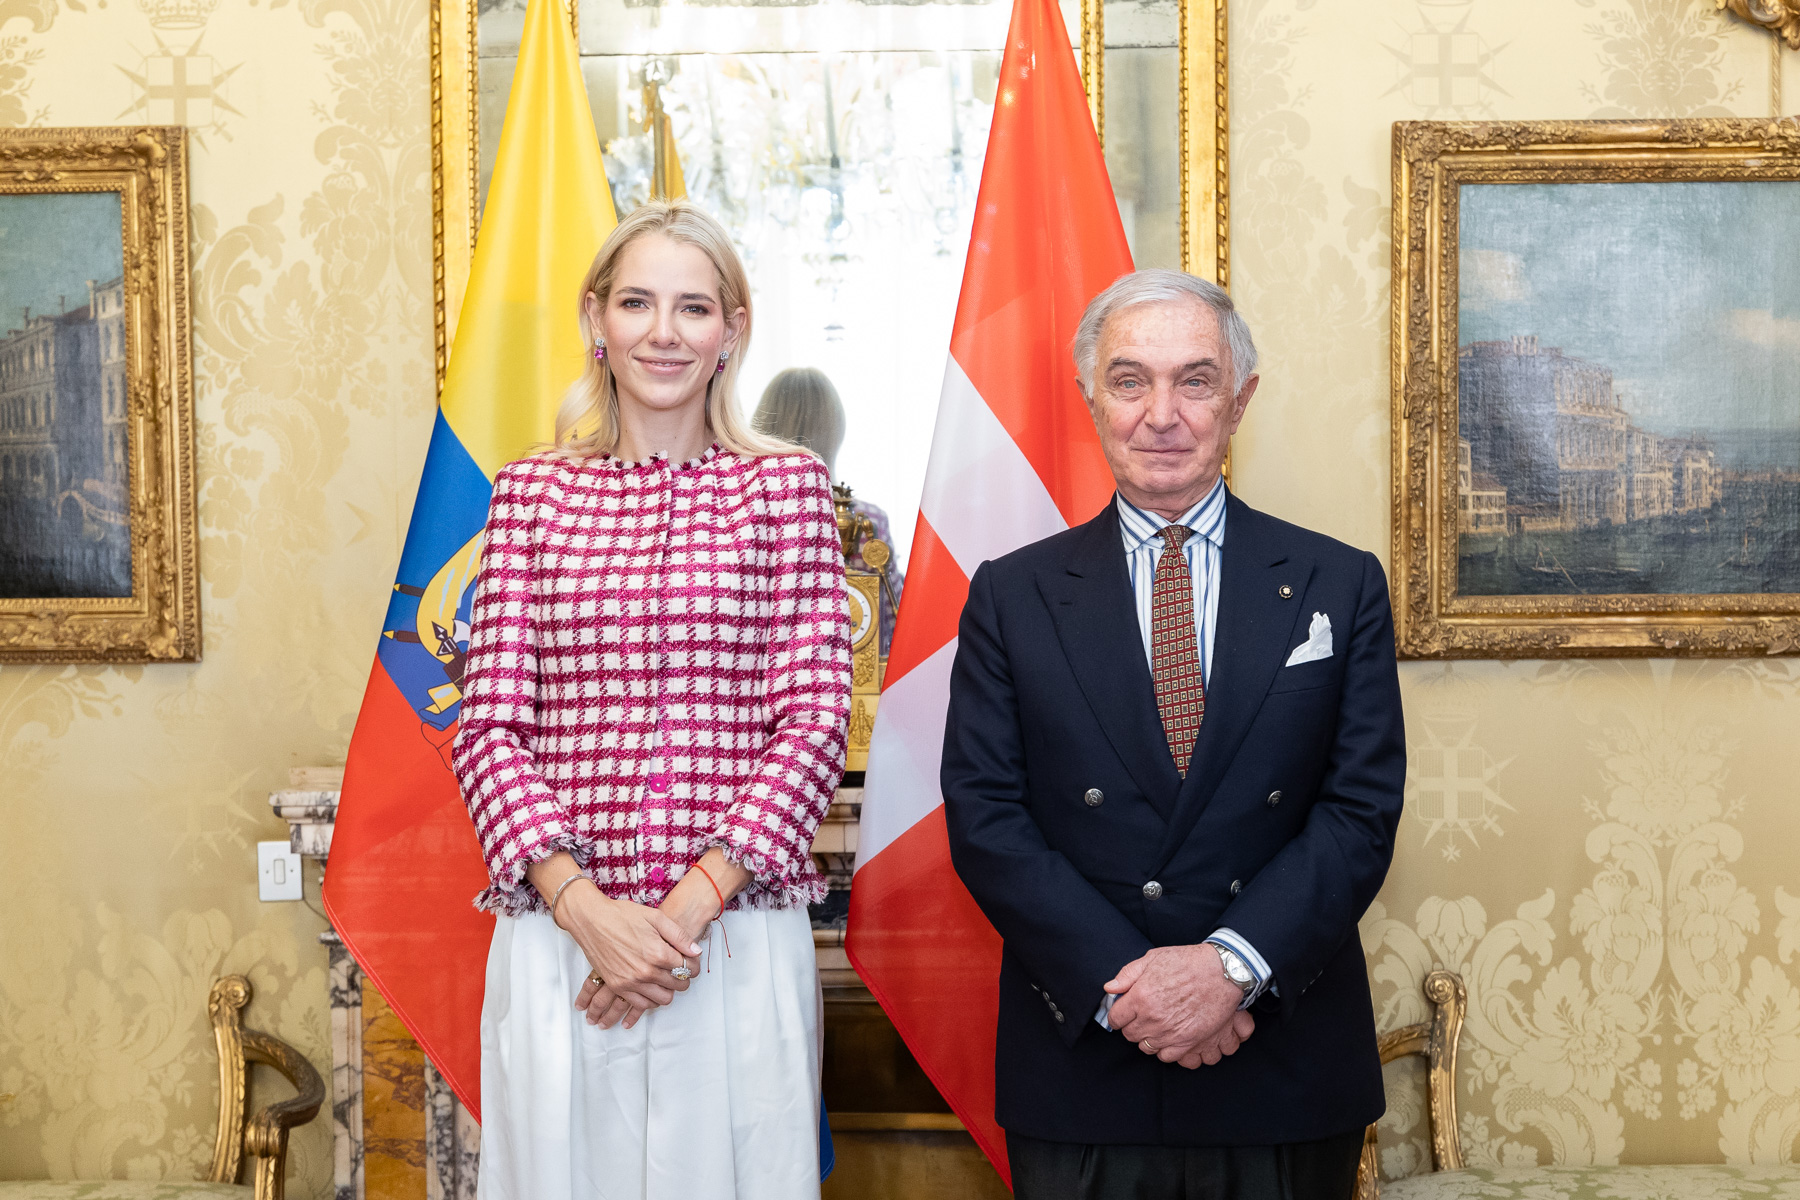 La First Lady dell’Ecuador incontra il Gran Cancelliere a Palazzo Magistrale